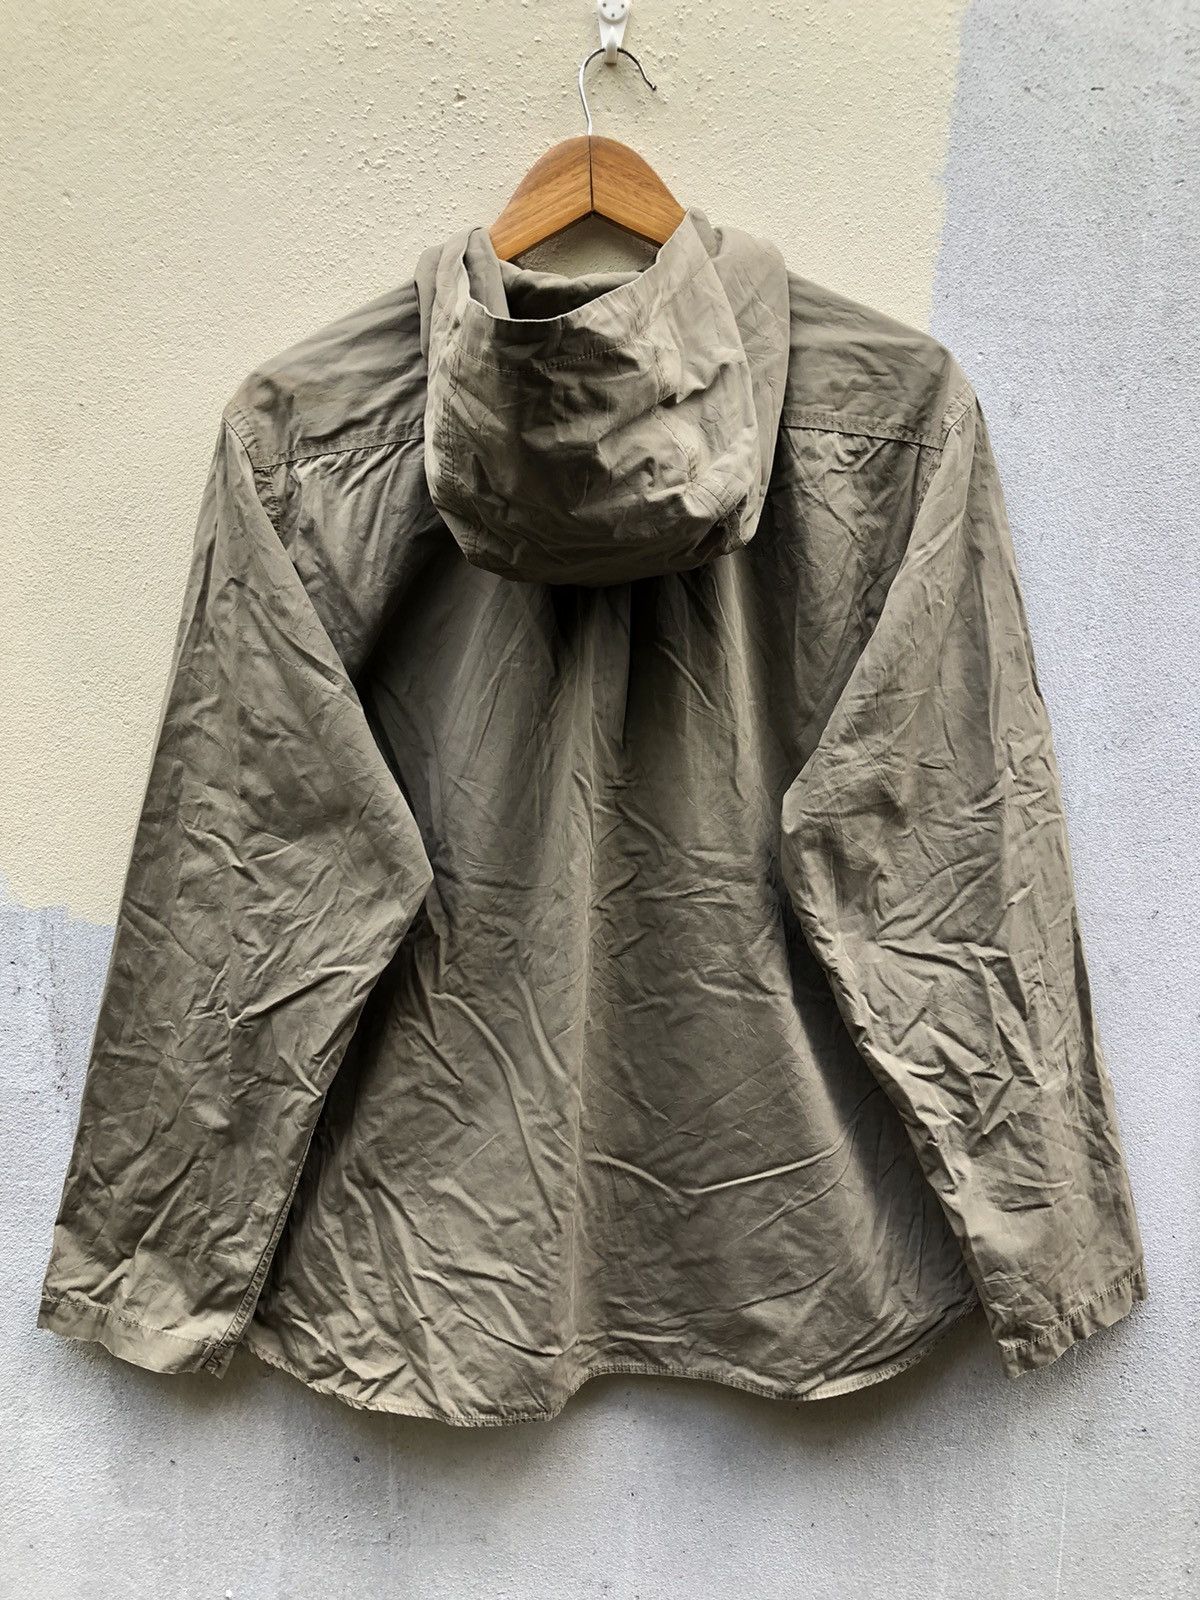 Vintage Mangaret Howell Linen’s Hoodies Jackets Size US L / EU 52-54 / 3 - 2 Preview